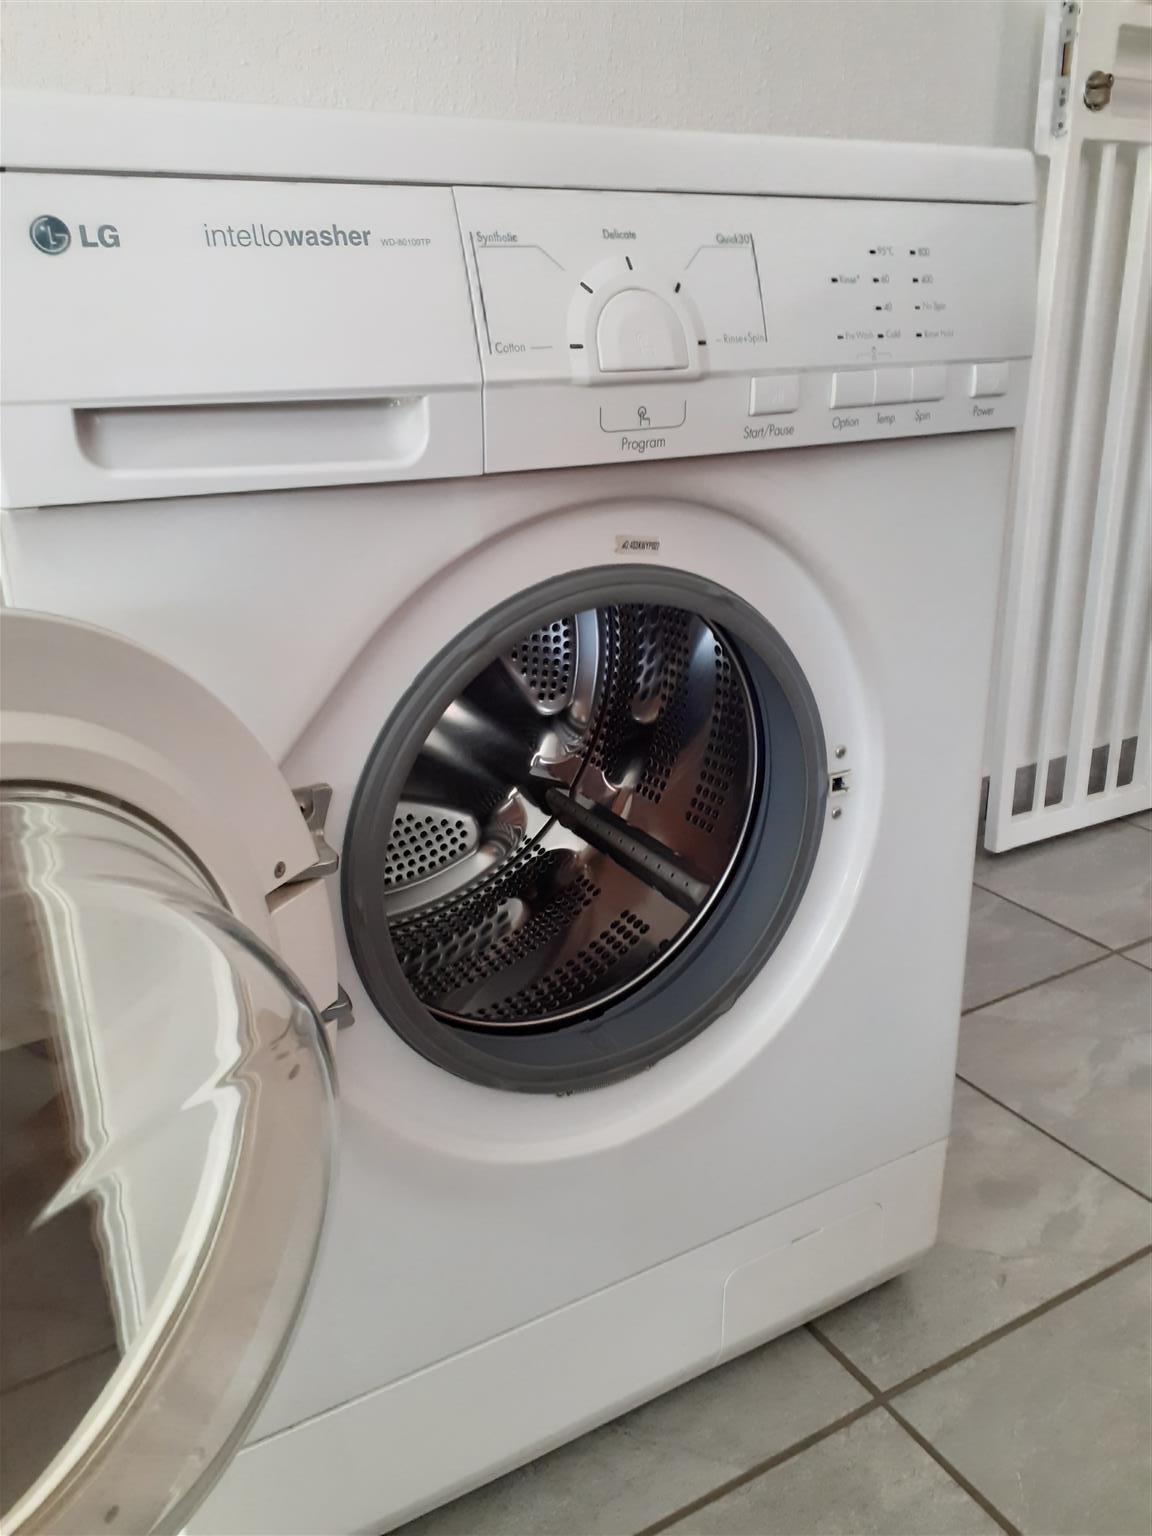 Washing Machine LG Intellowasher